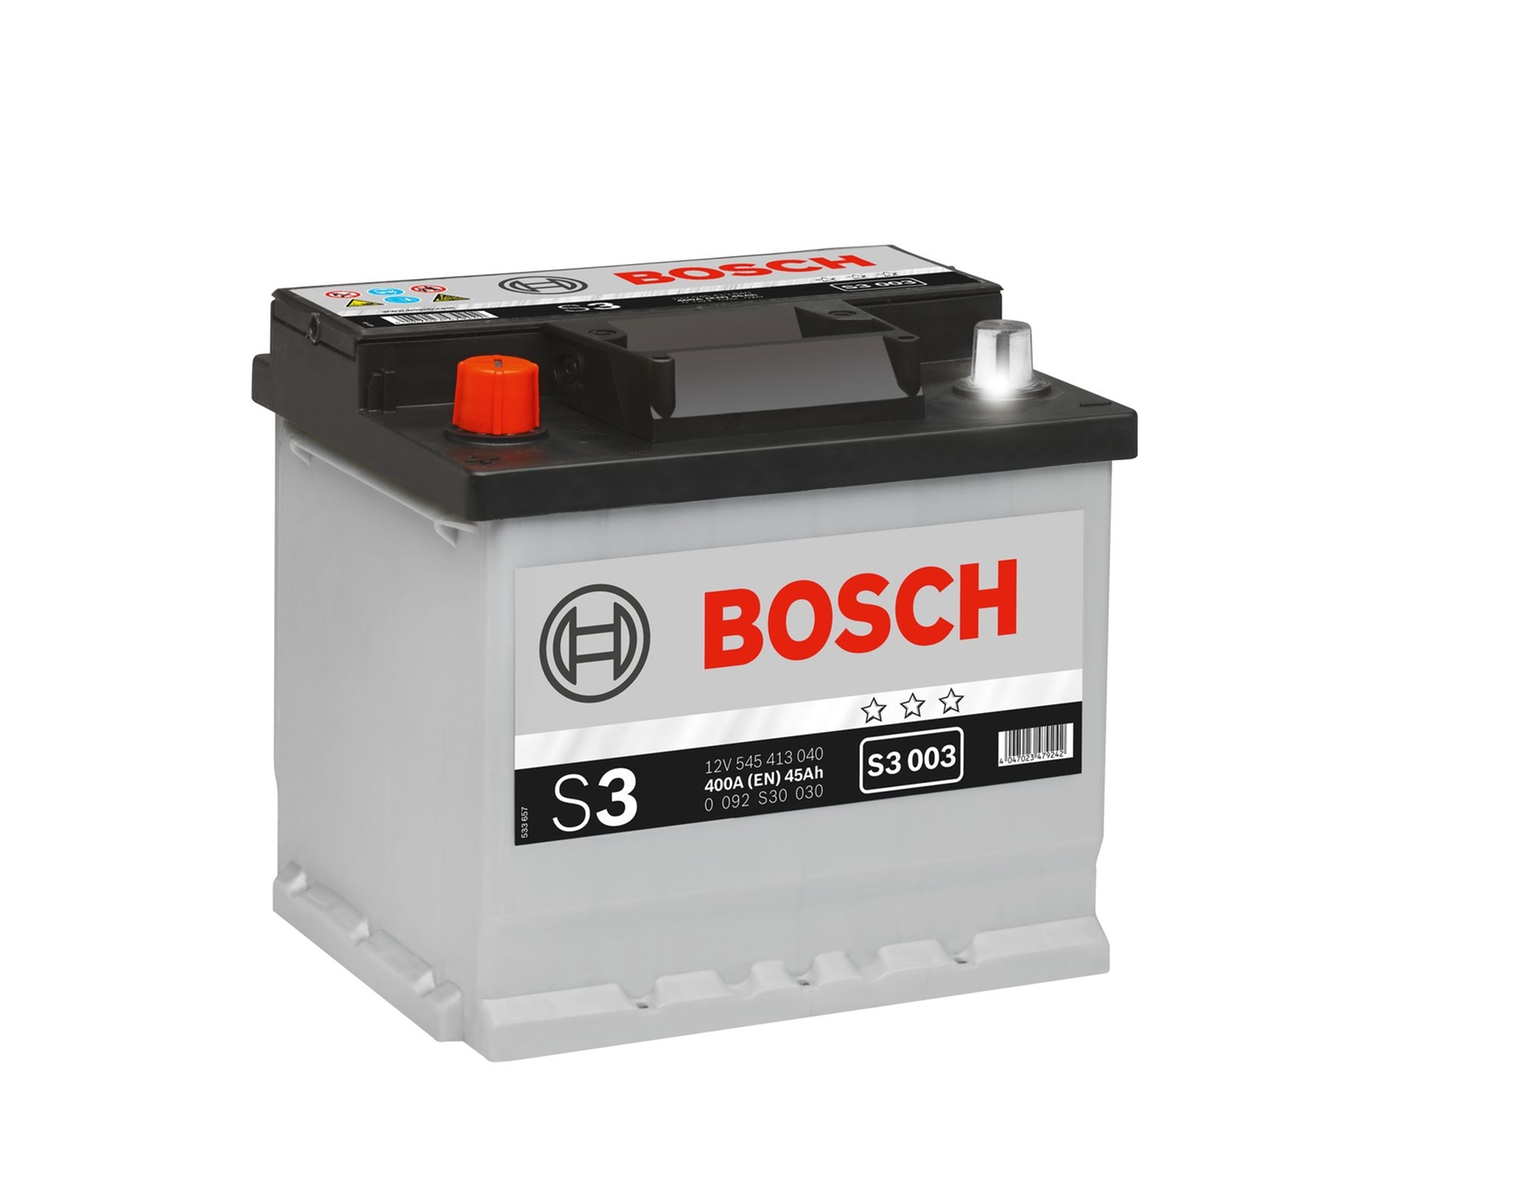 Bosch Starter-Batterie 12V 545 413 040 45Ah, S3 003 H4R